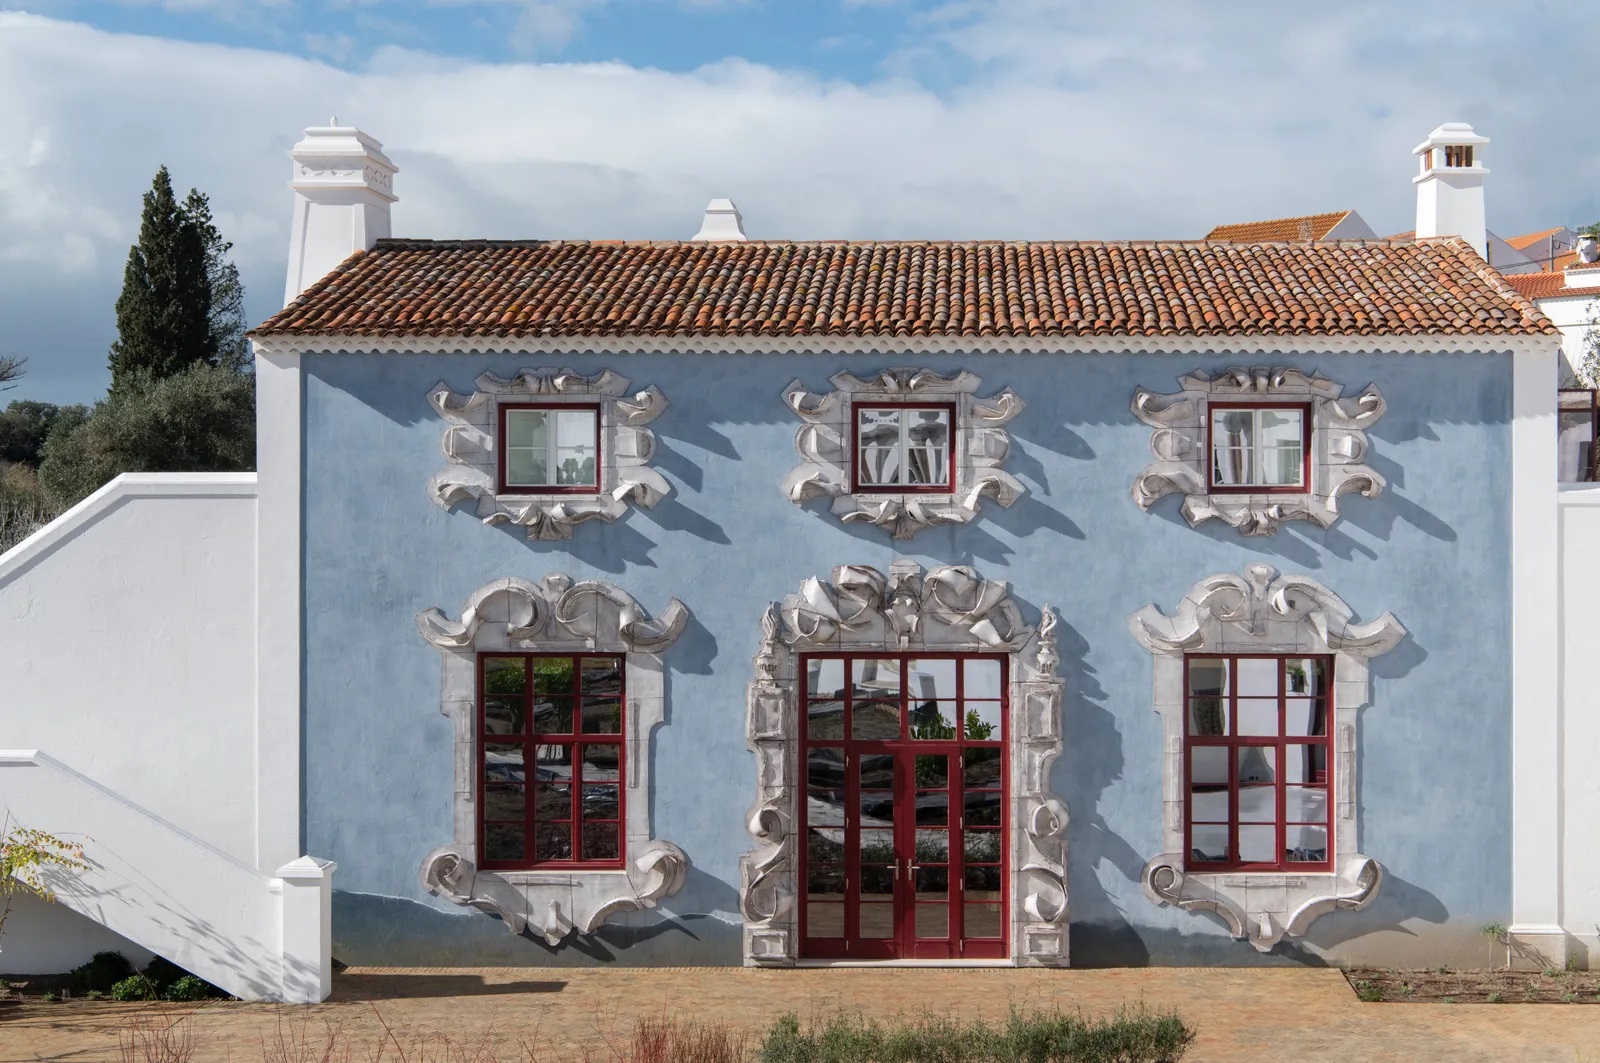 Inside Christian Louboutin’s Hotel Vermelho in Melides, Portugal